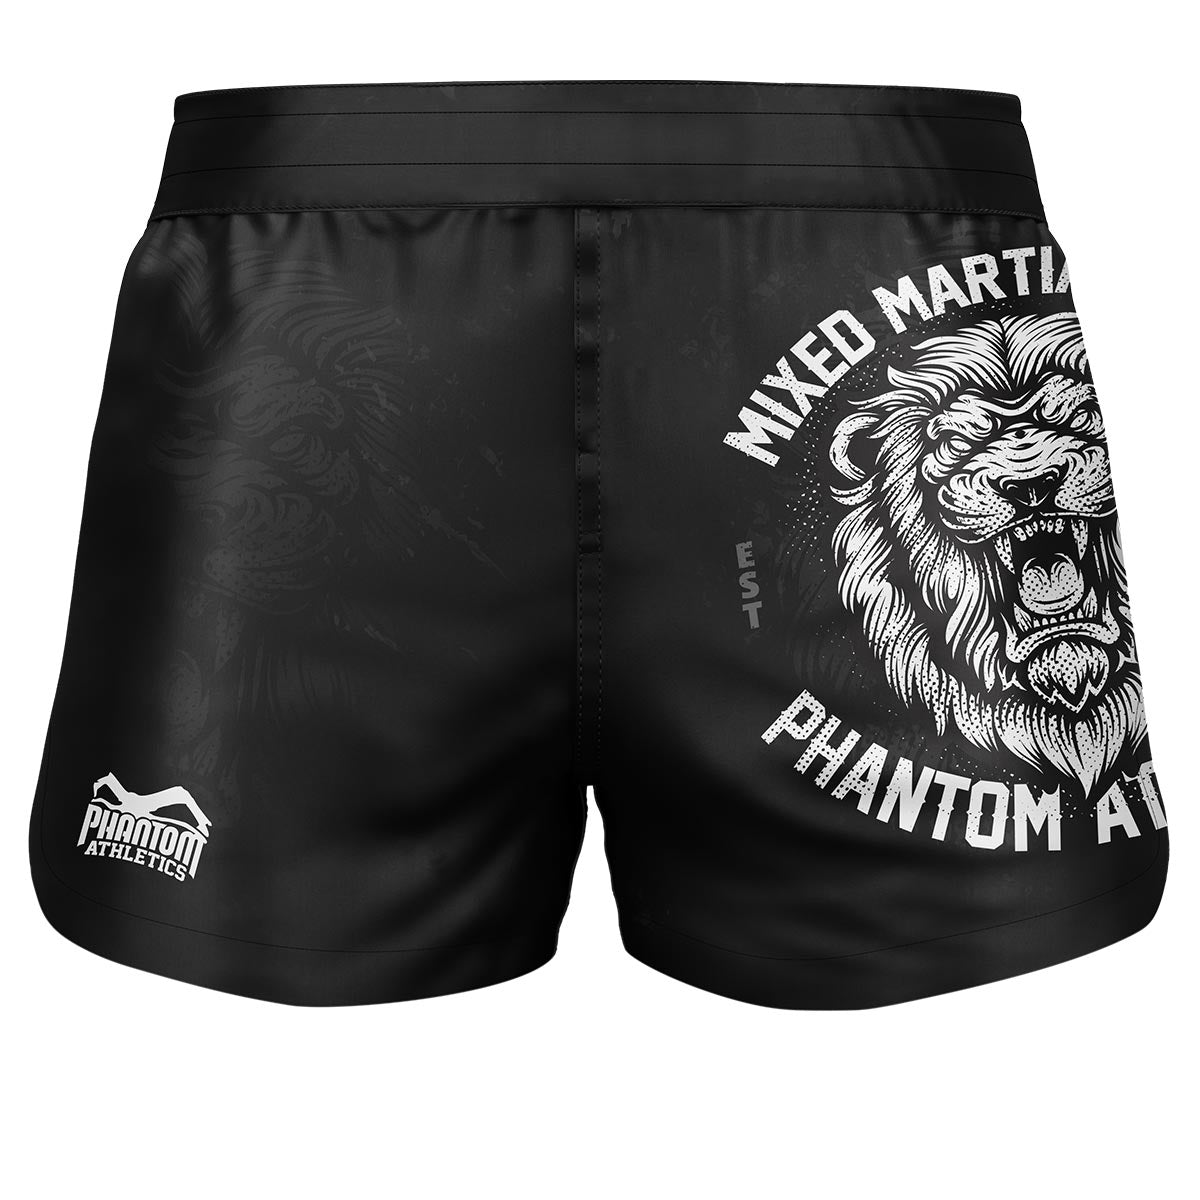 Phantom Fightshorts Fusion 2in1. Ultimative Shorts für deinen Kampfsport. IDeal für MMA, Muay Thai, BJJ, Ringen und mehr. In schwarz mit Löwen Design.